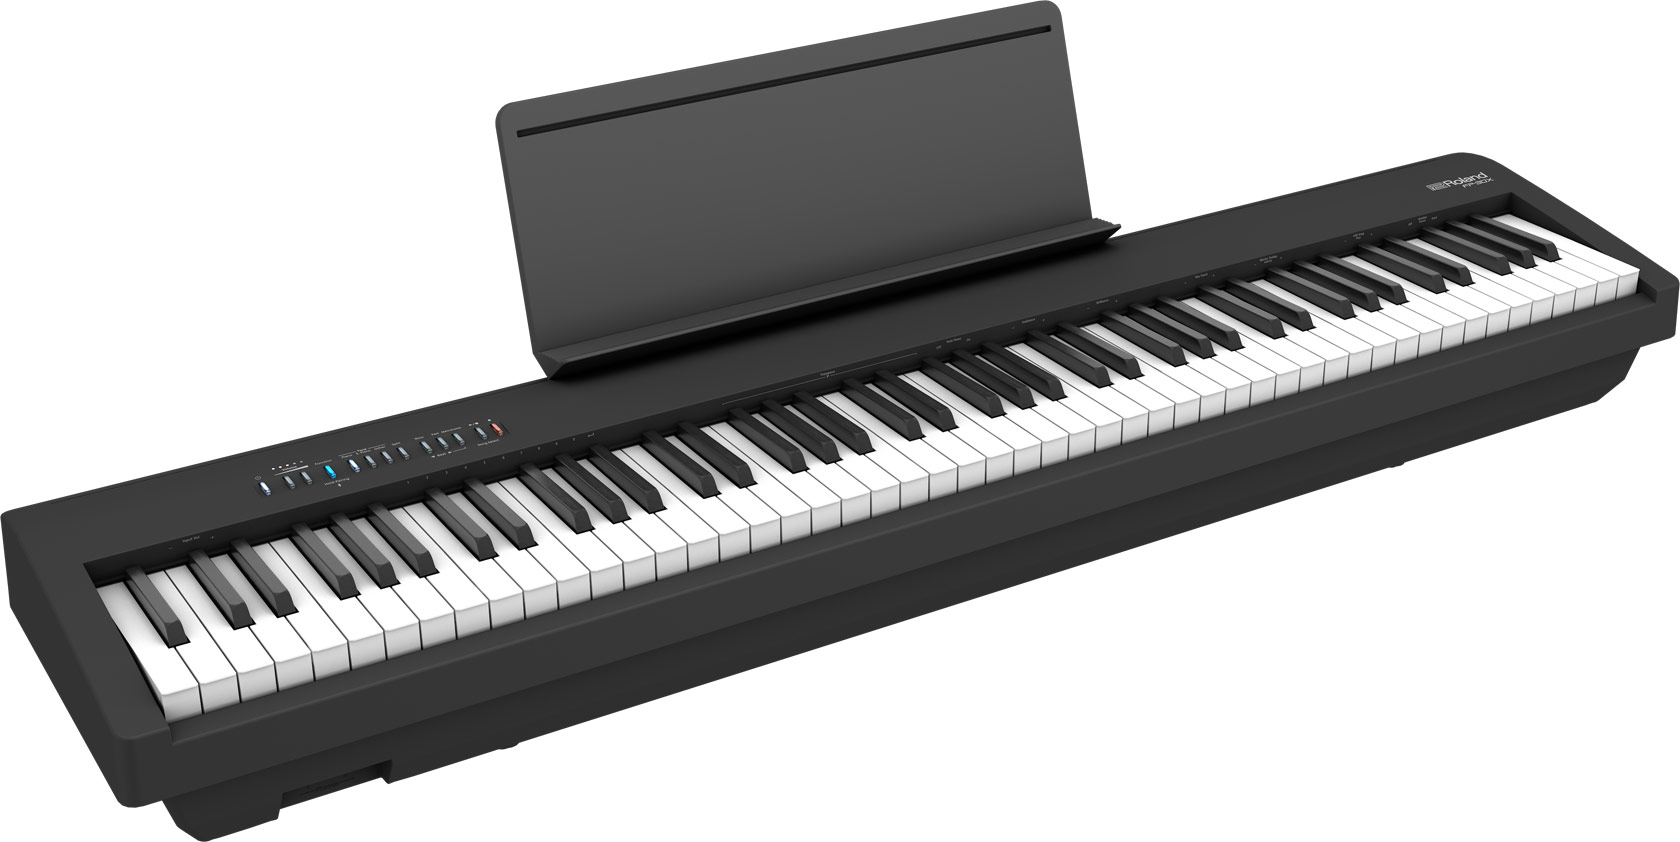 Este Roland es uno de los mejores pianos digitales del mercado.